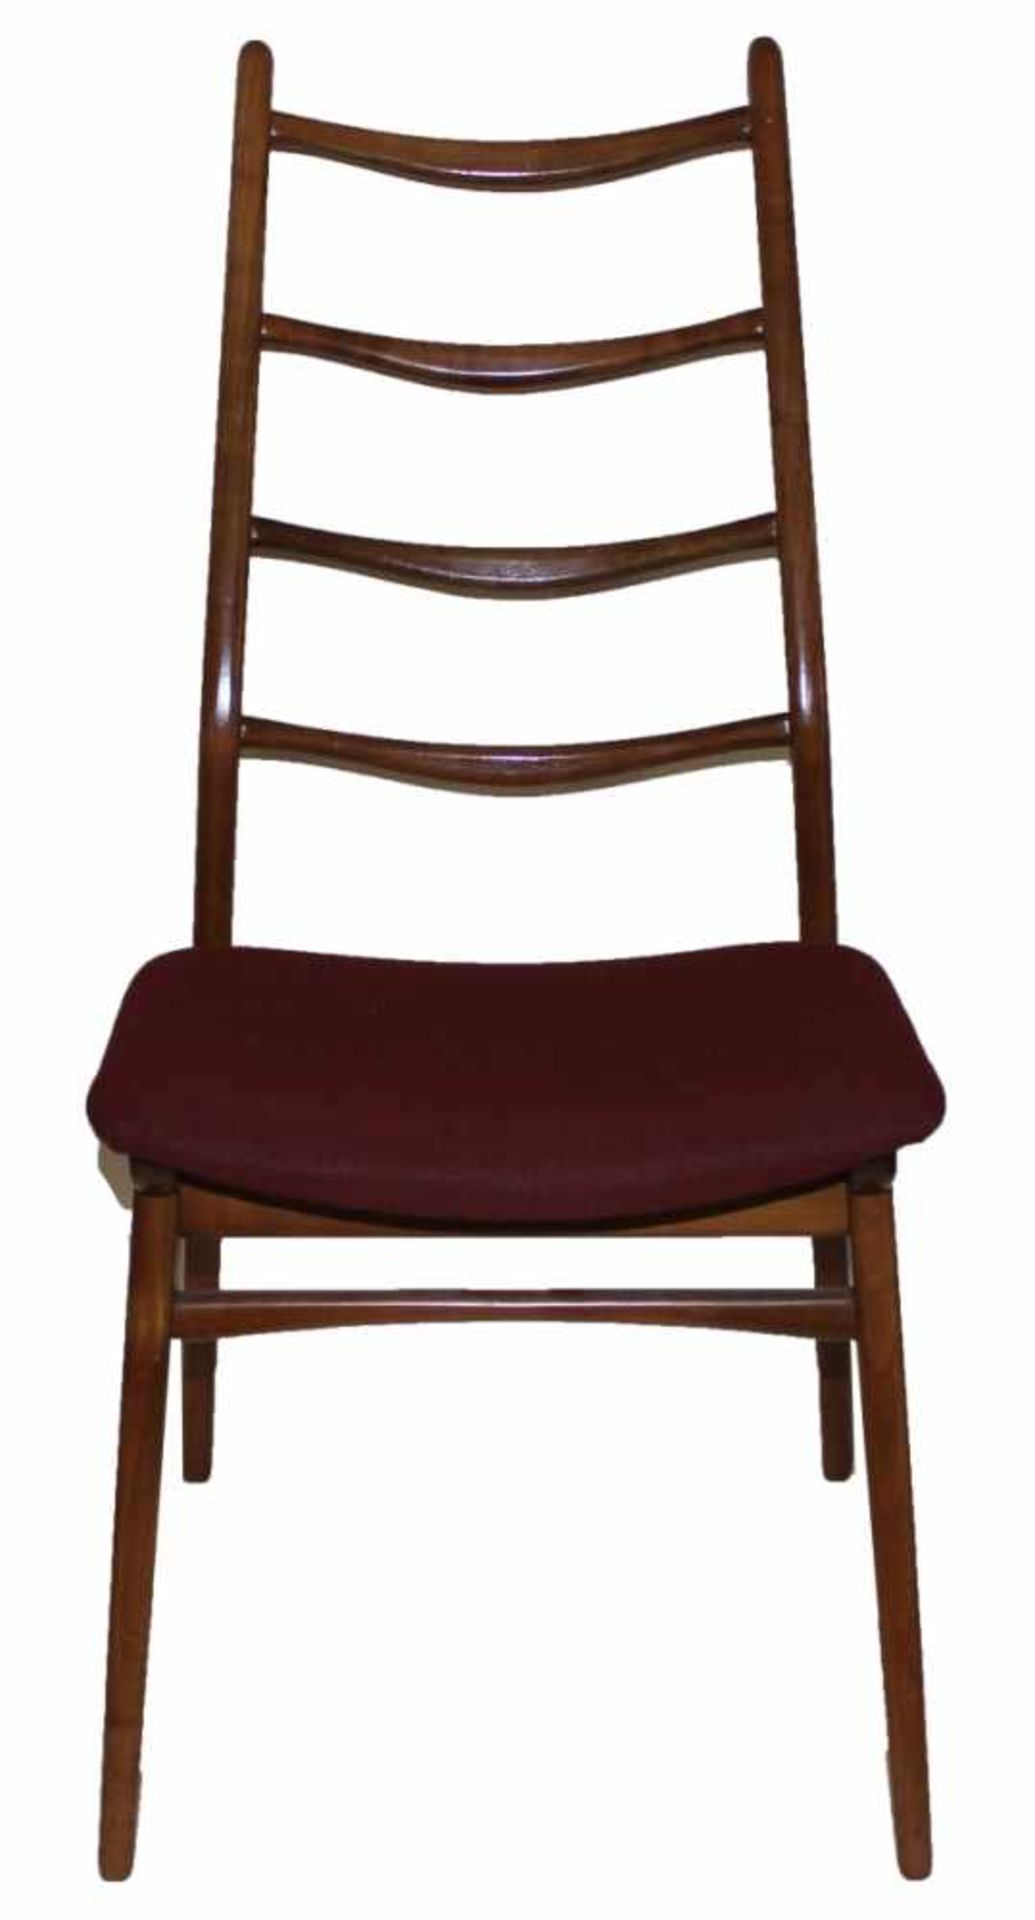 Satz von 6 Stühlen - deutsch um 1960/70 Habeo Modell, hohe Rückenlehne mit vier Quersprossen,